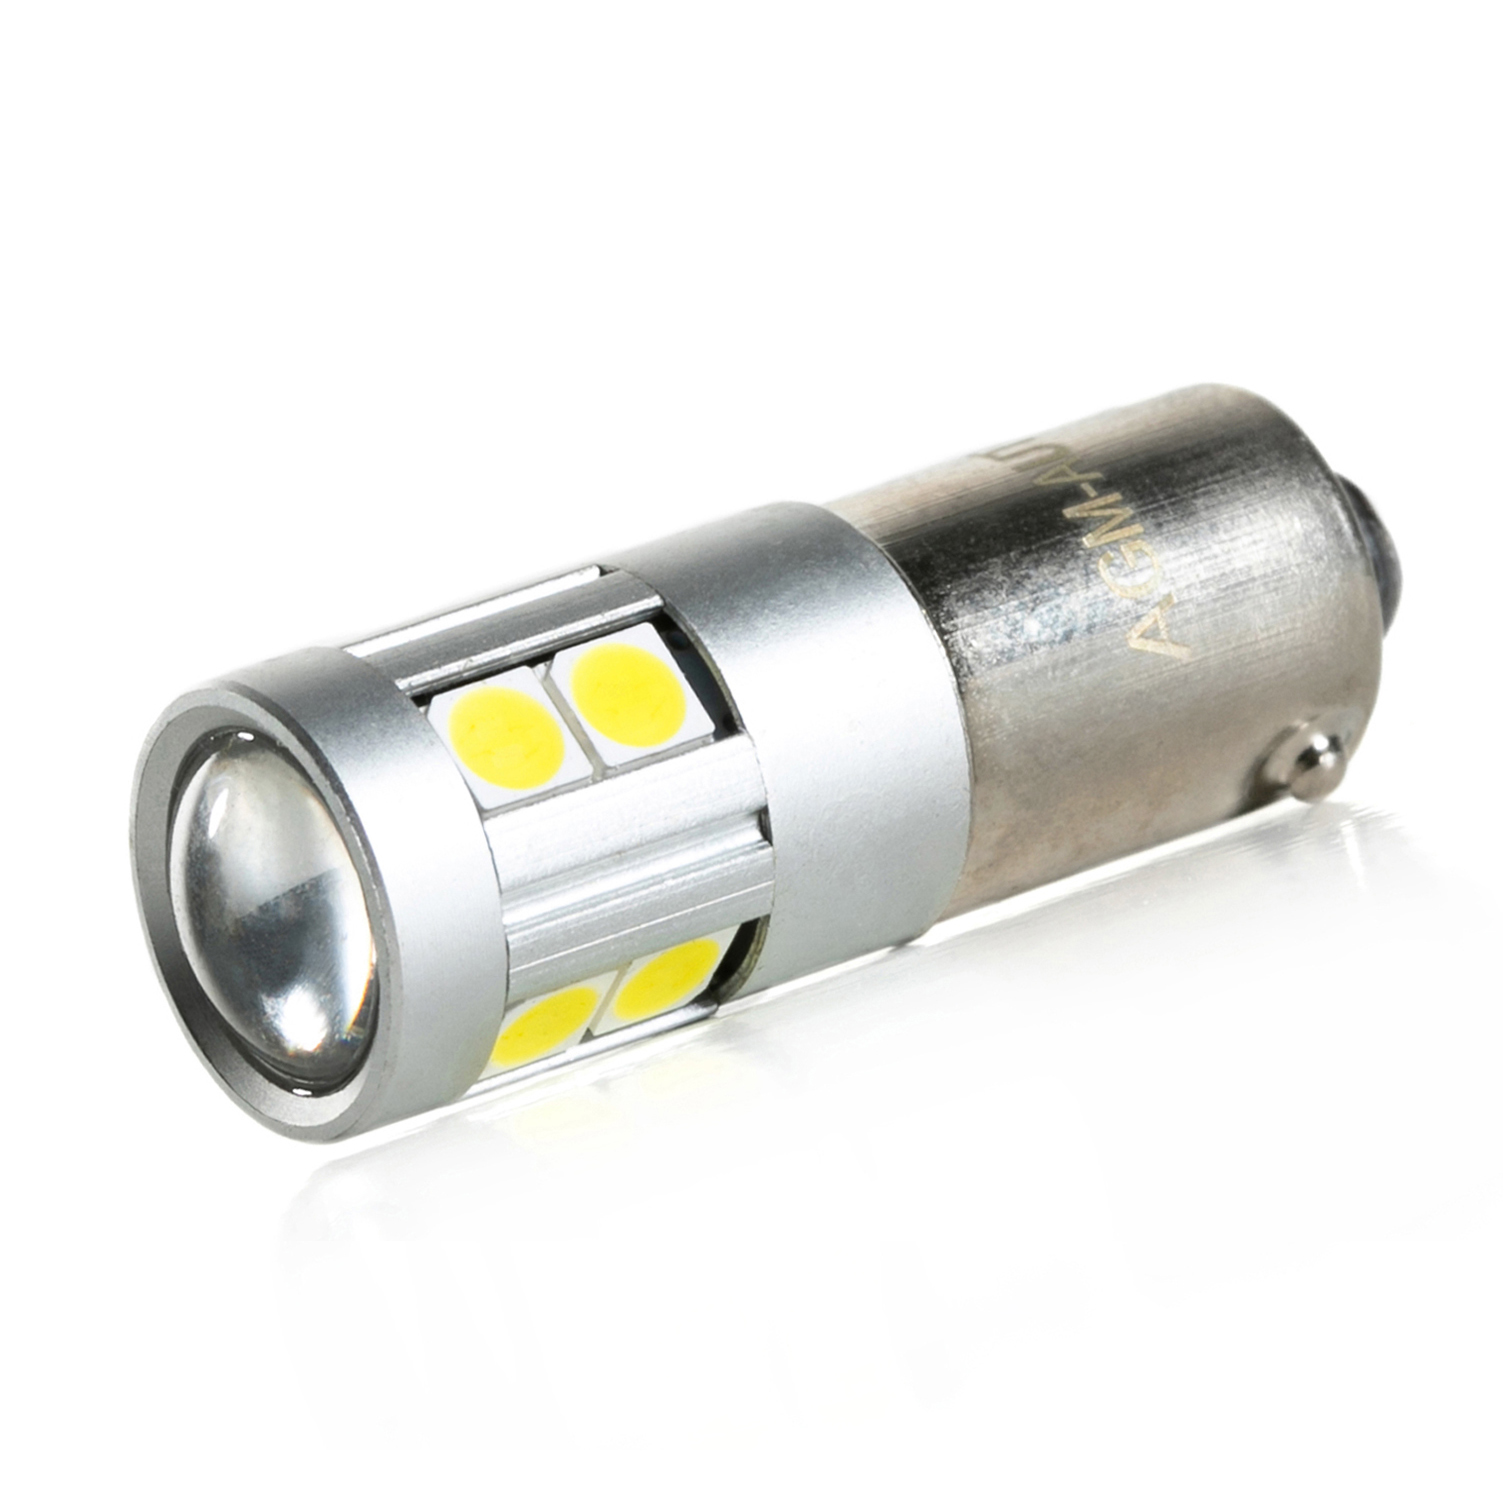 Ampoule led H21W Bay9s - (10SMD-5630-lenti)